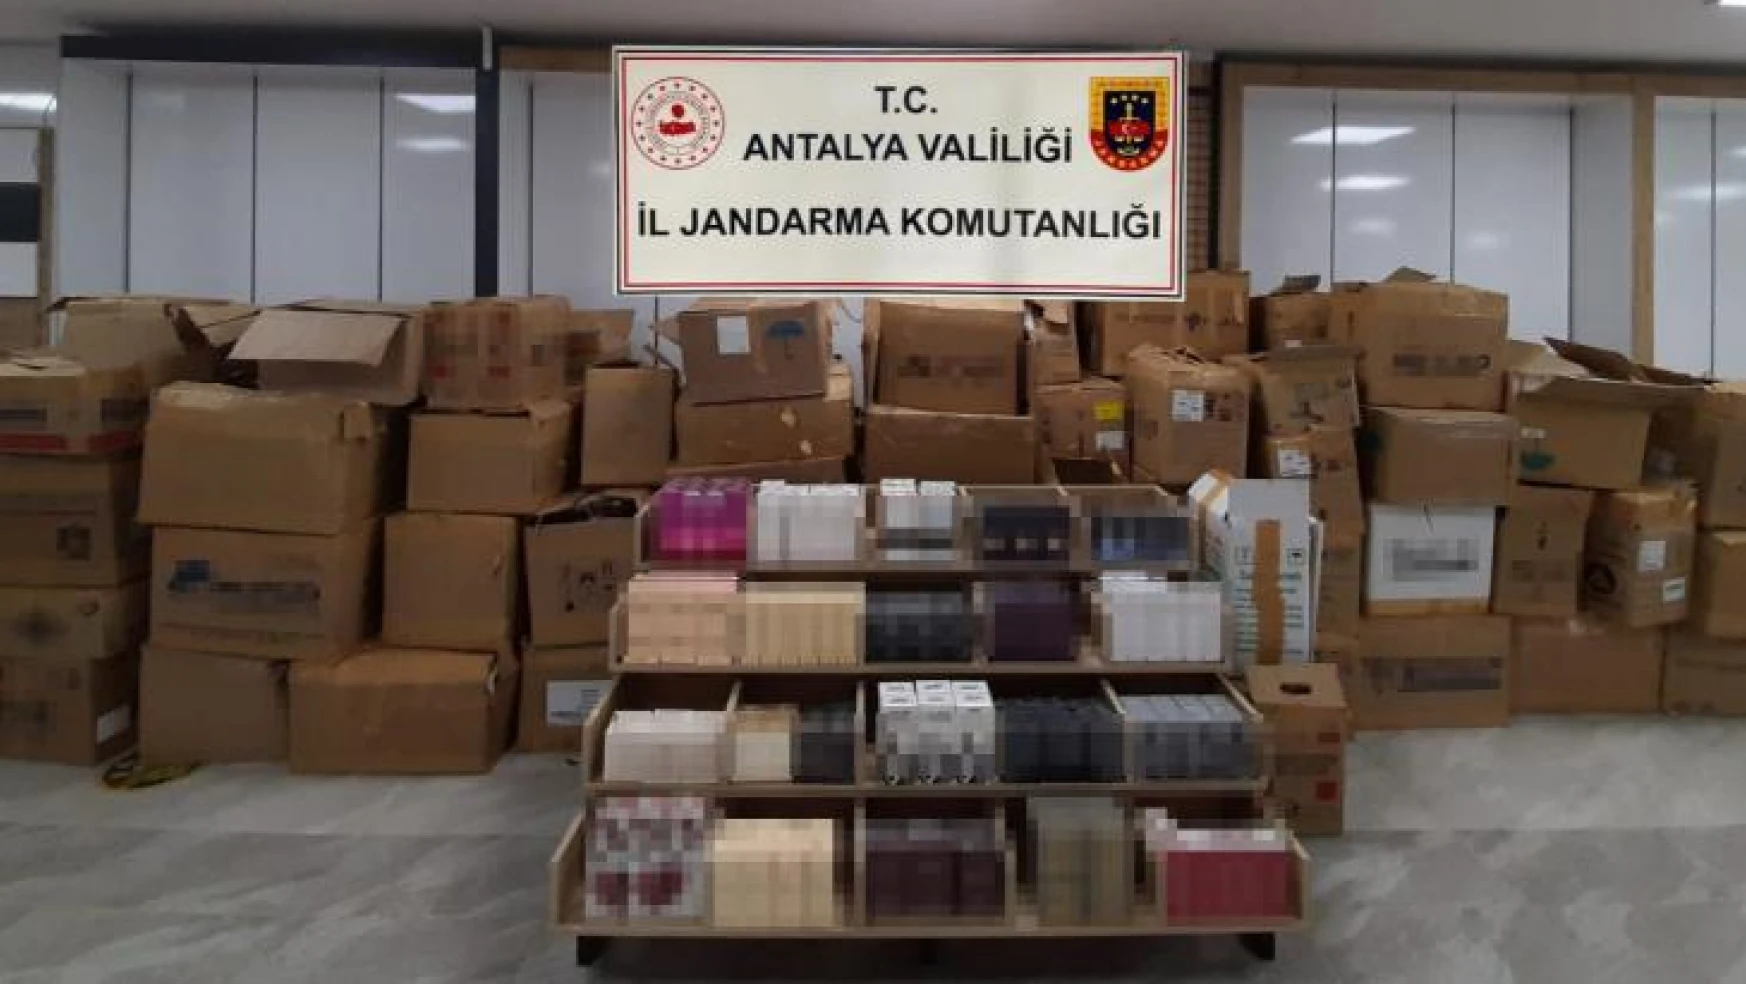 Antalya'da 1 milyon 750 bin TL değerinde 8 bin 713 adet kaçak parfüm ele geçirildi